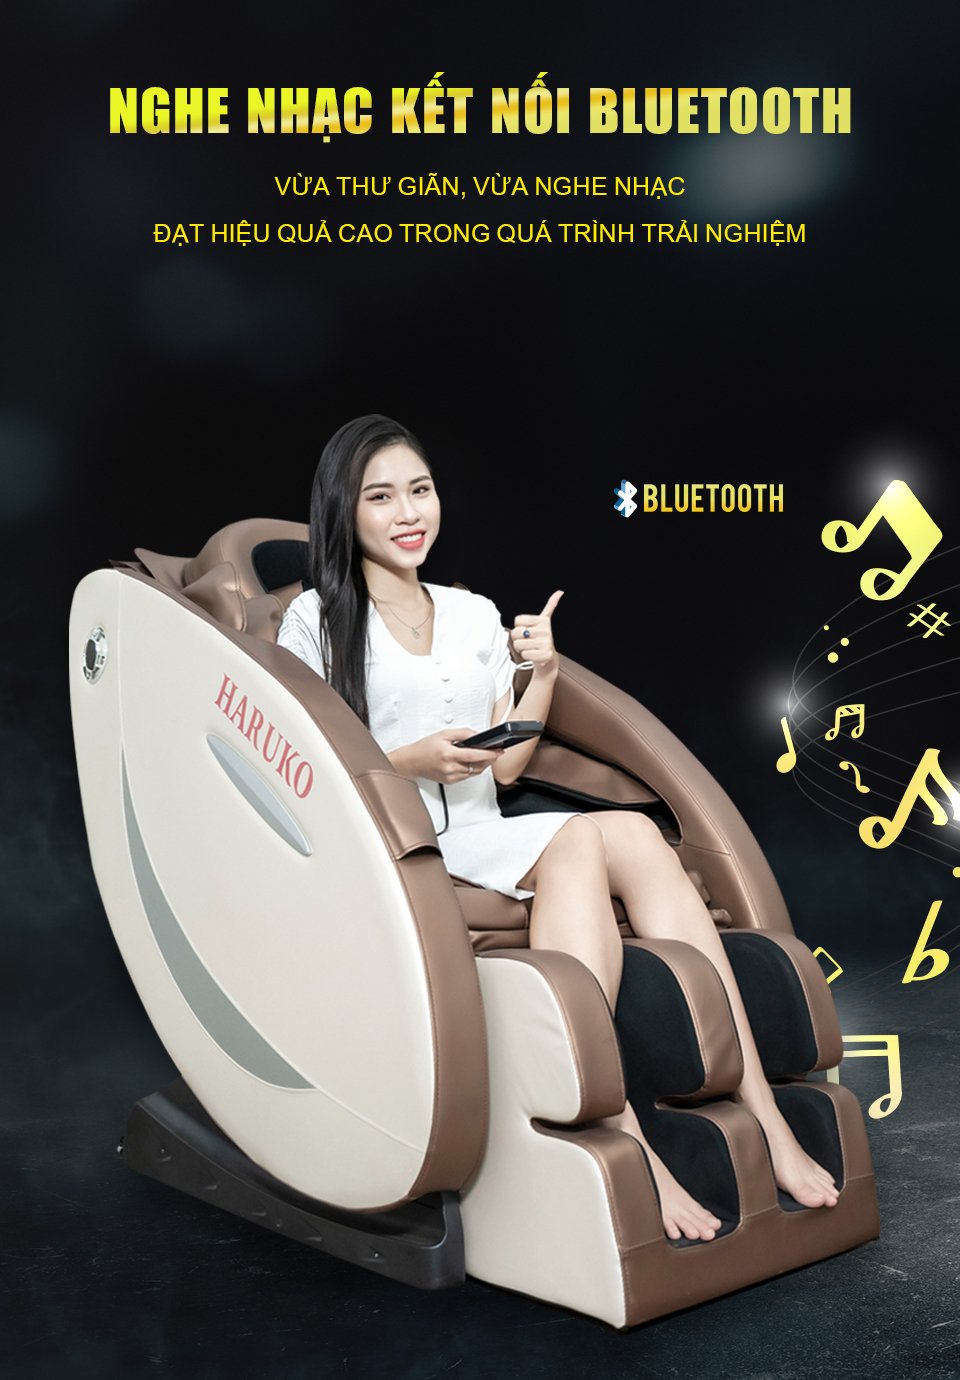 Ghế massage Haruko H7 đưa sự thư giãn lên tầm cao mới với công nghệ loa Bluetooyh hiện đại